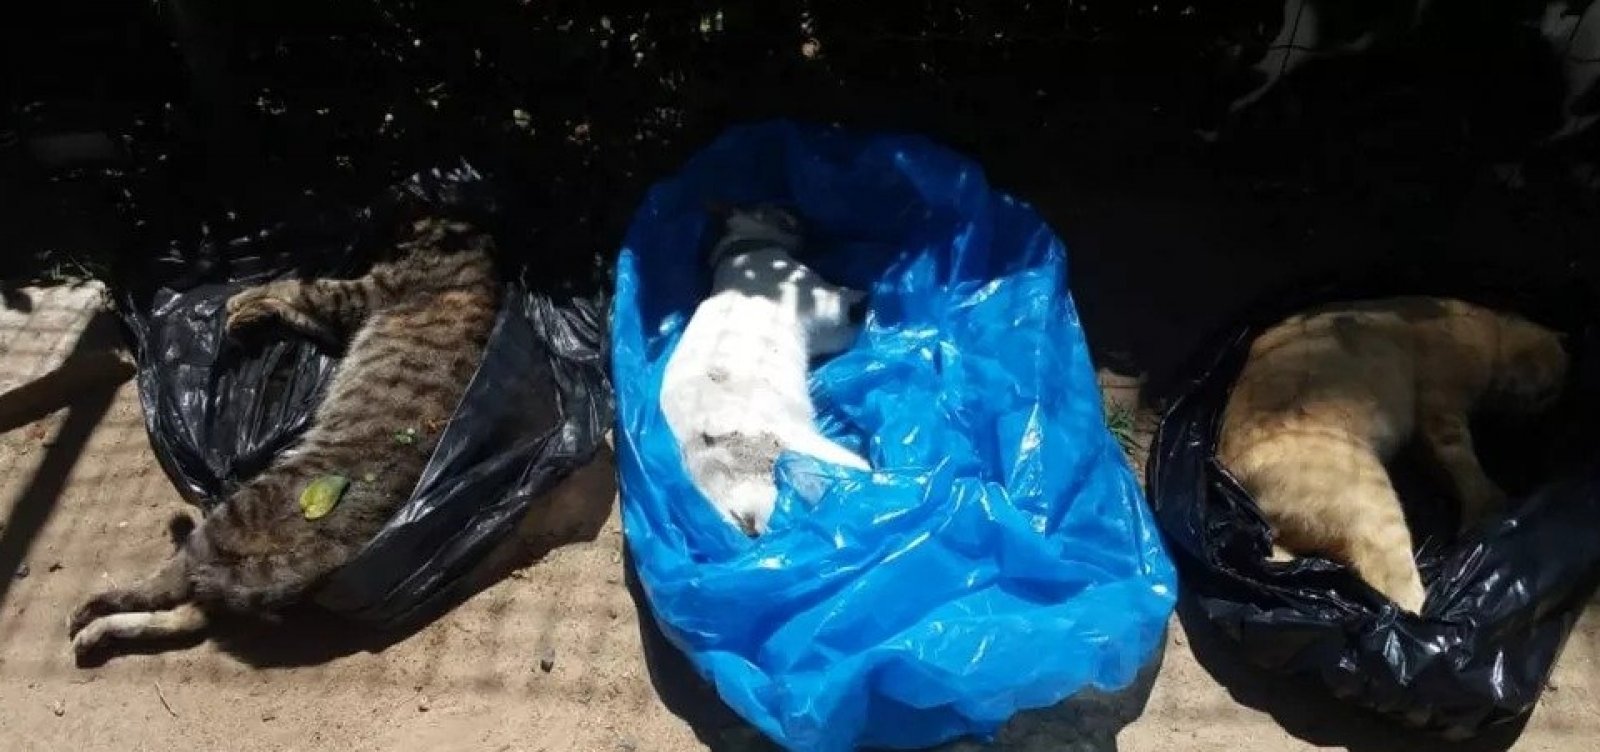 Moradores denunciam morte de 18 gatos e desaparecimento de outros 20 em condomínio na Bahia